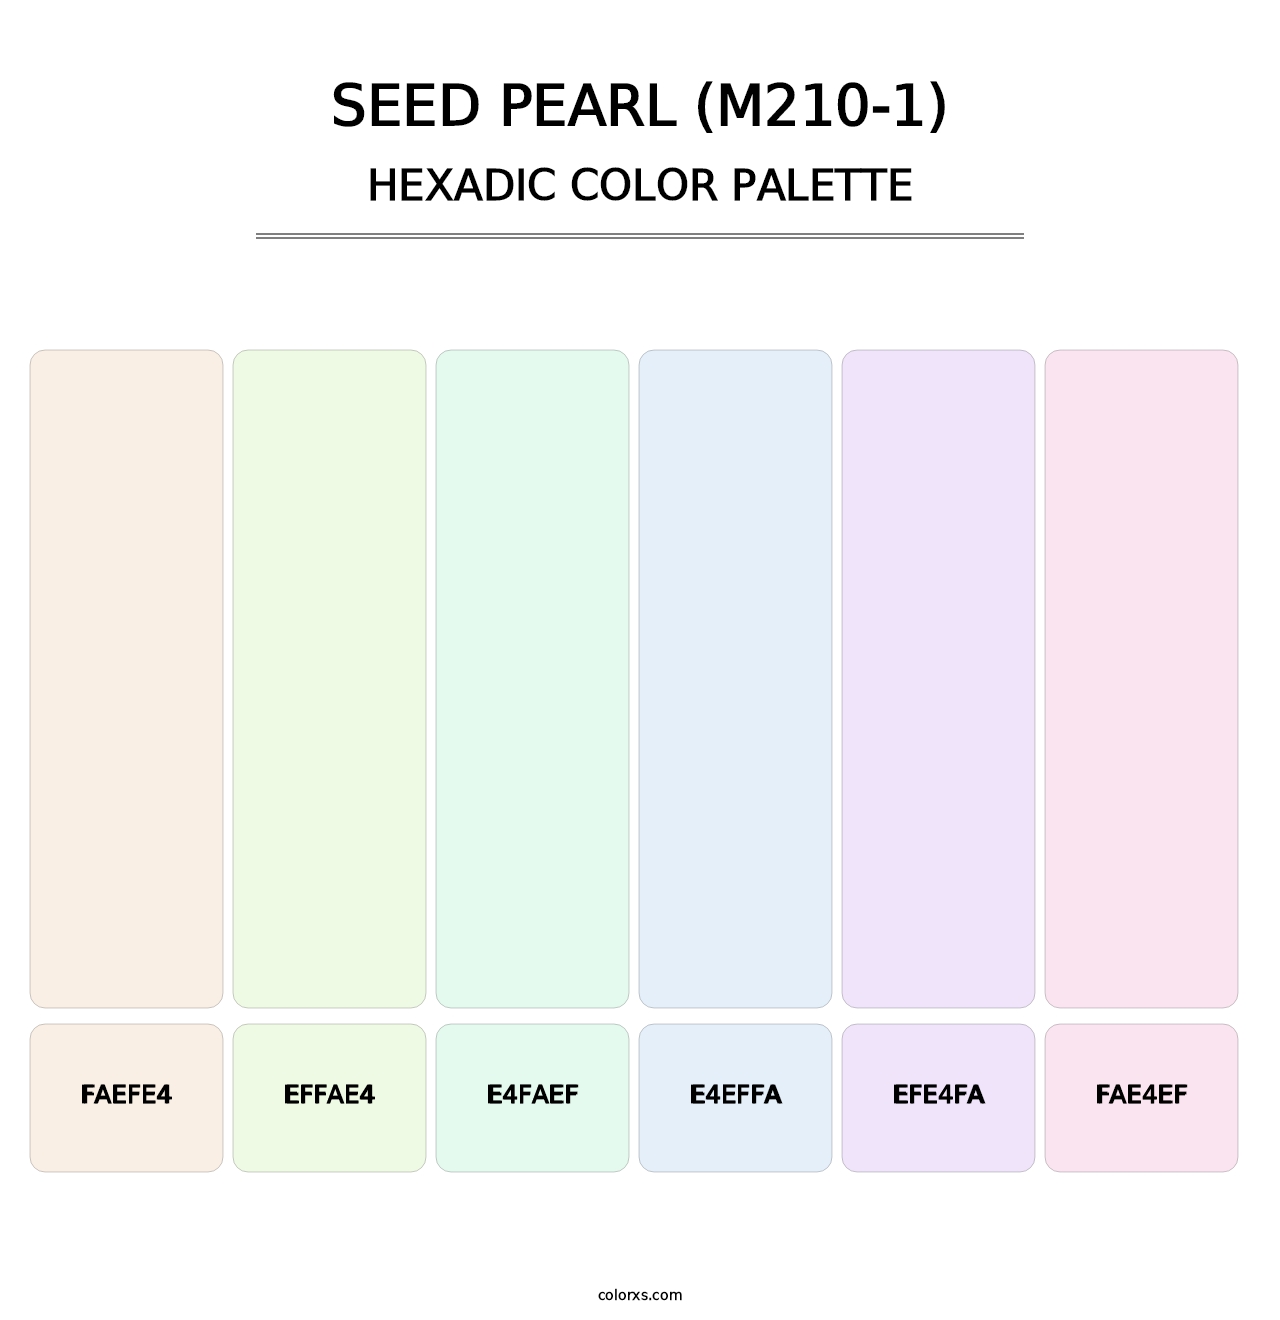 Seed Pearl (M210-1) - Hexadic Color Palette